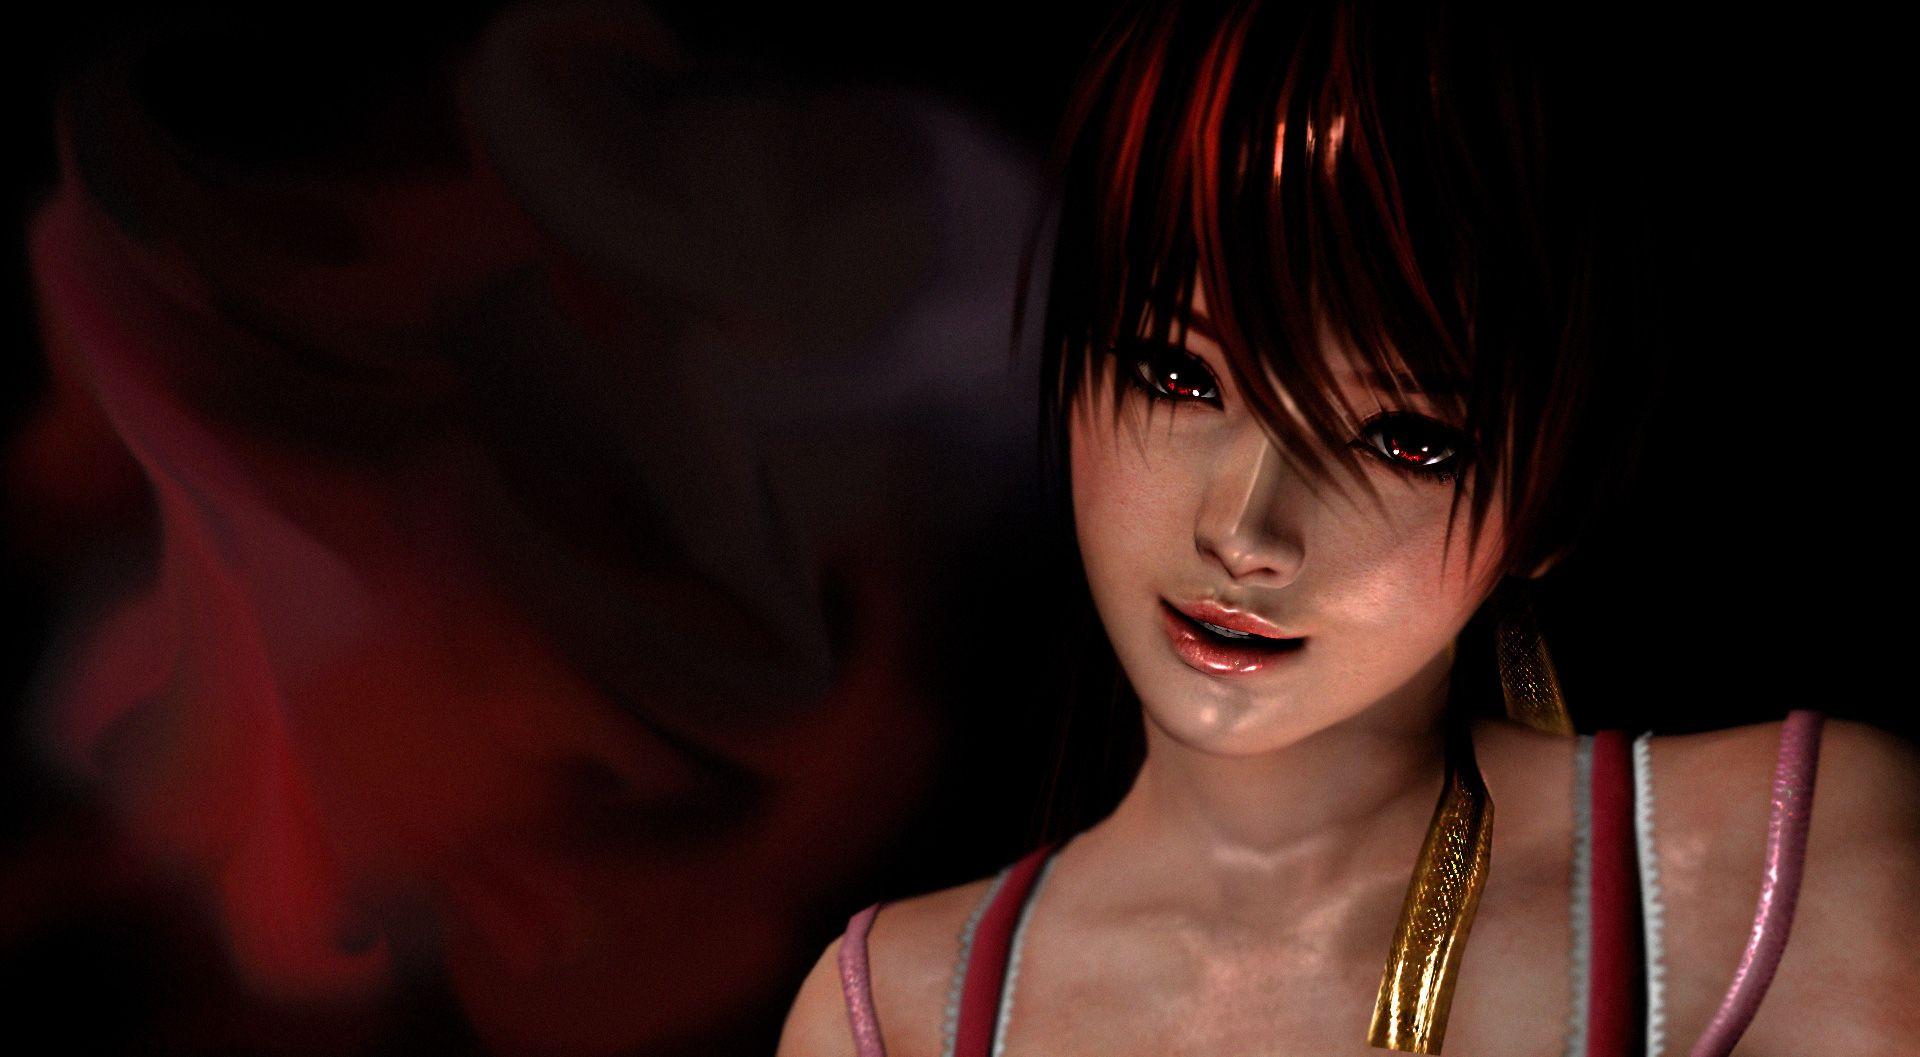 Kasumi Dead Or Alive Artwork, HD Games, 4k Wallpaper, Image